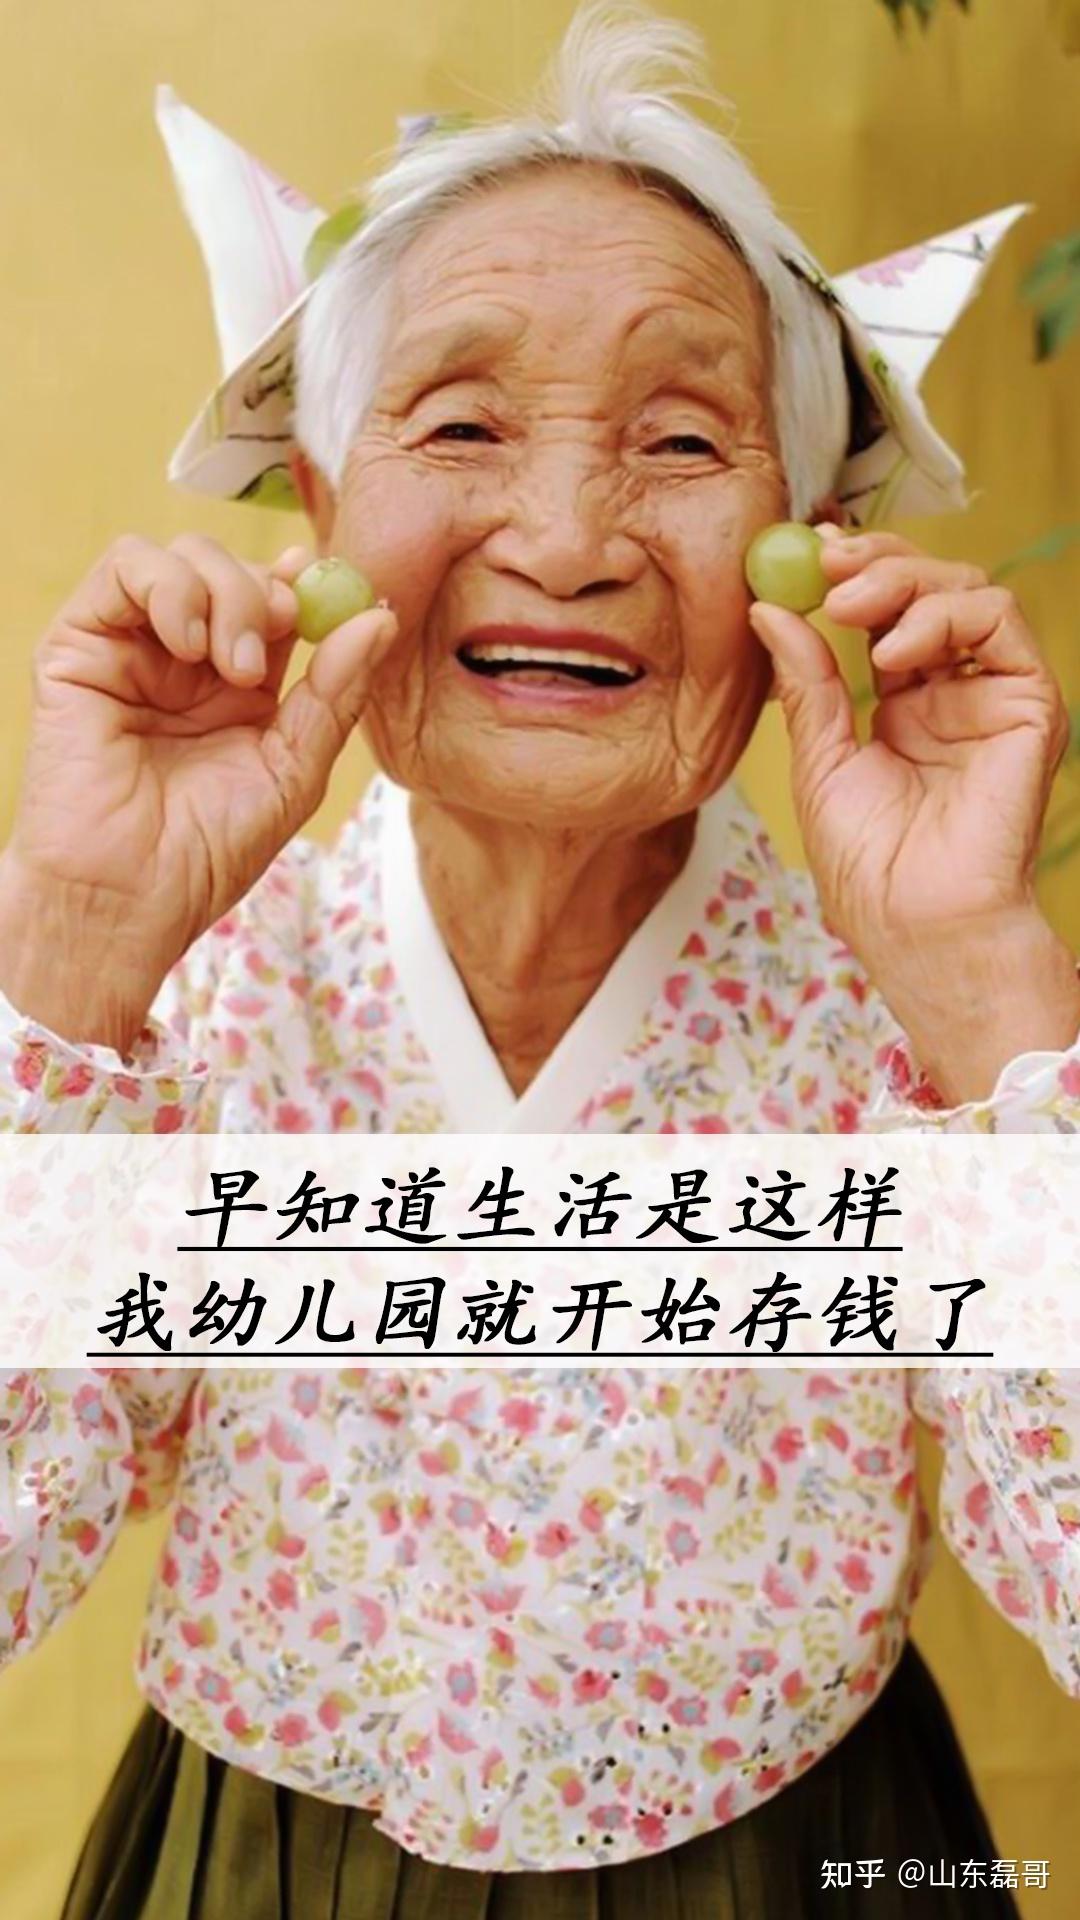 笑yue了表情包图片gif动图 - 求表情网,斗图从此不求人!